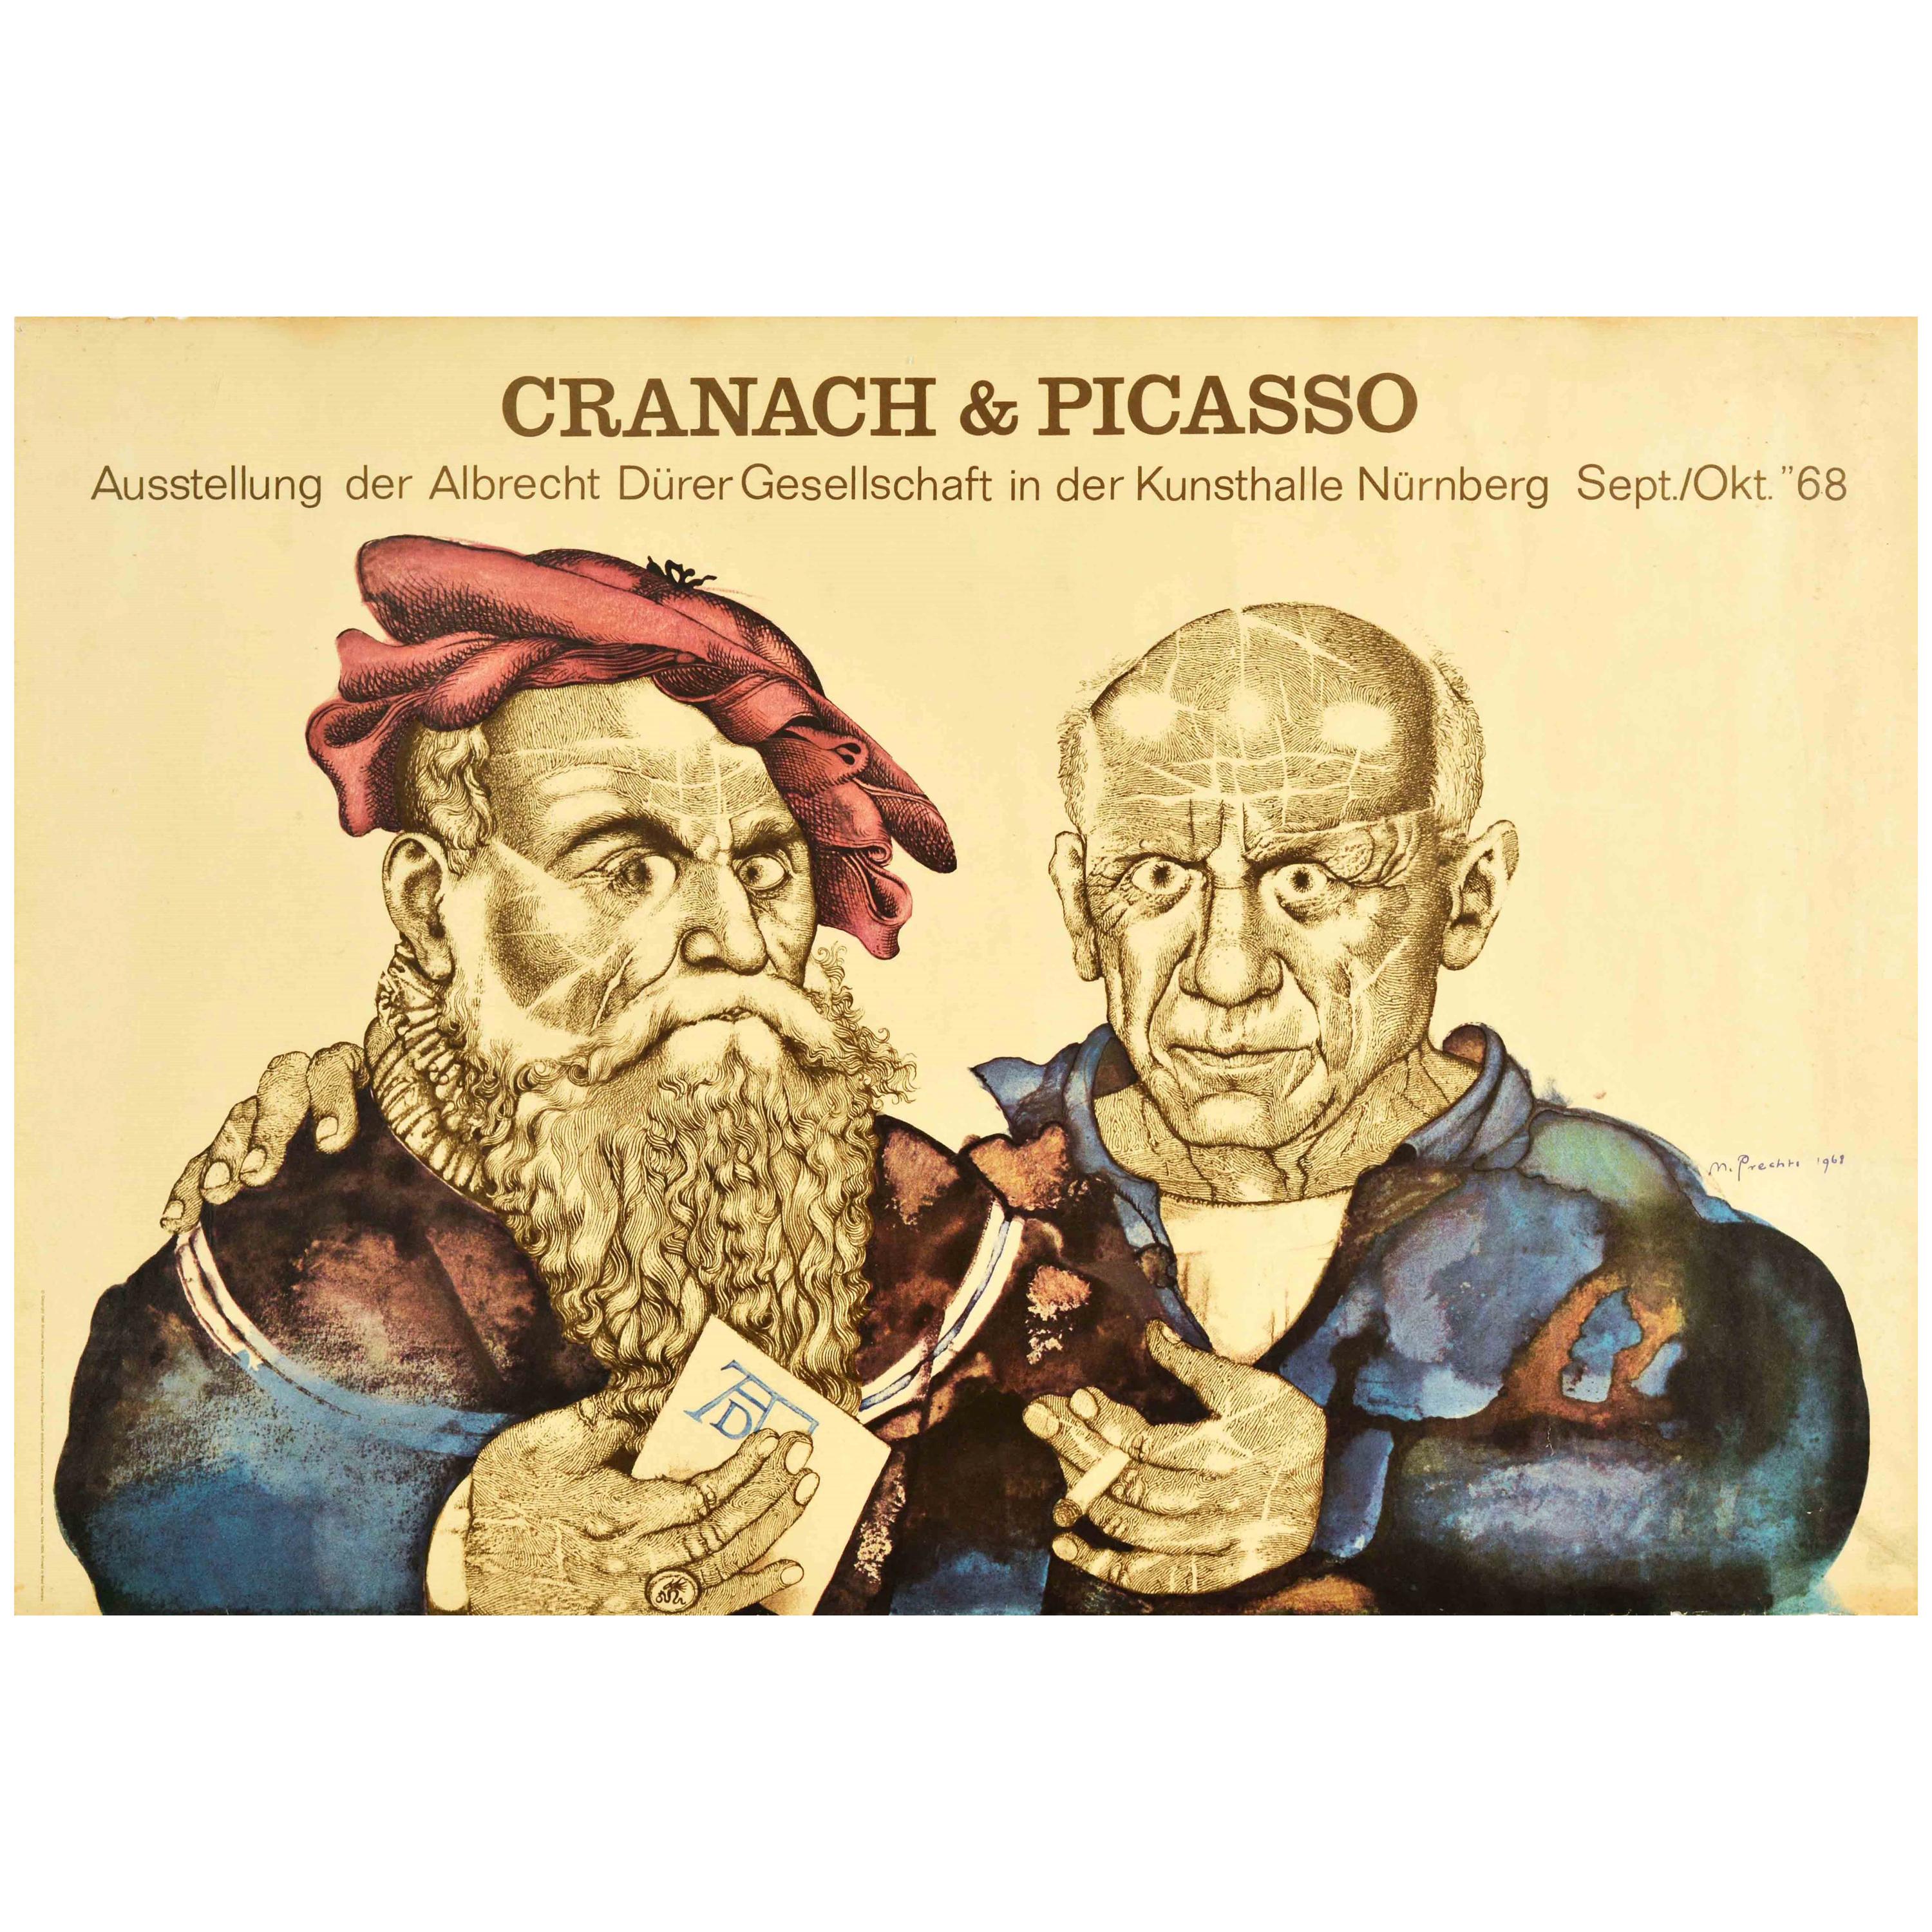 Affiche vintage d'origine de l'exposition d'art Cranach & Picasso, Albrecht Durer Society